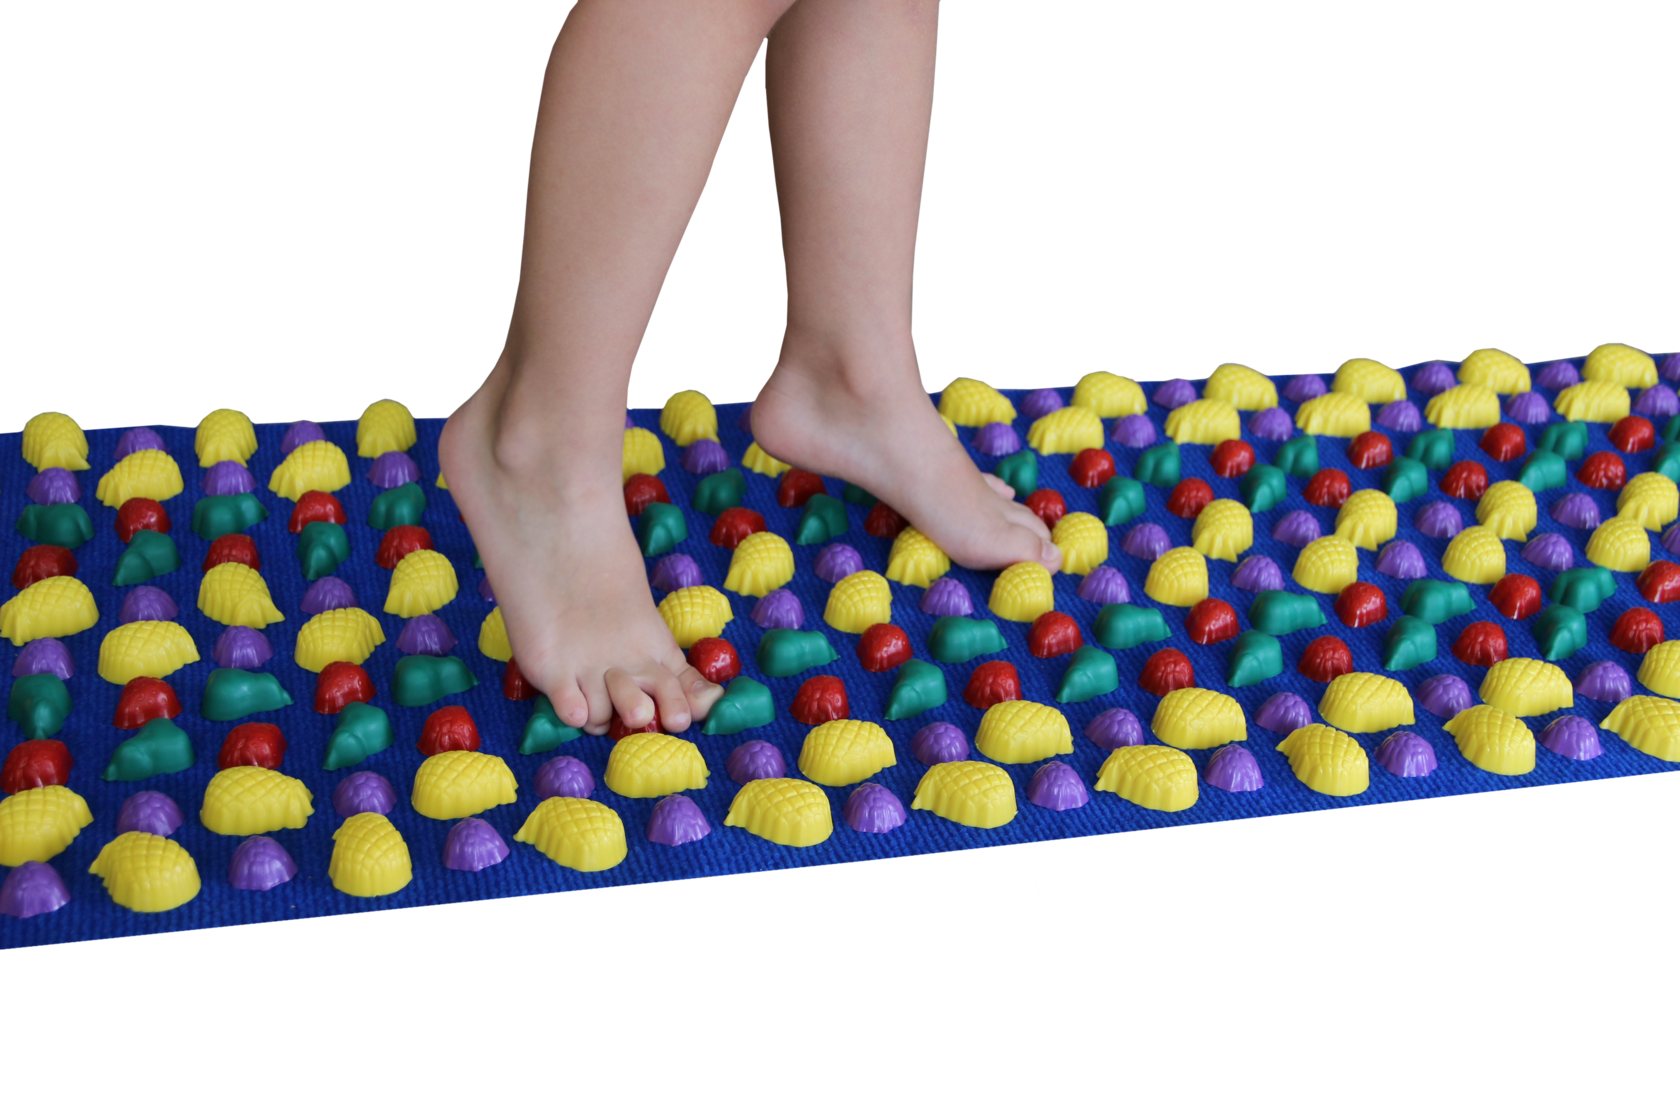 Массажный коврик: для детей в детский сад, для ног и другие виды, как сделать своими руками